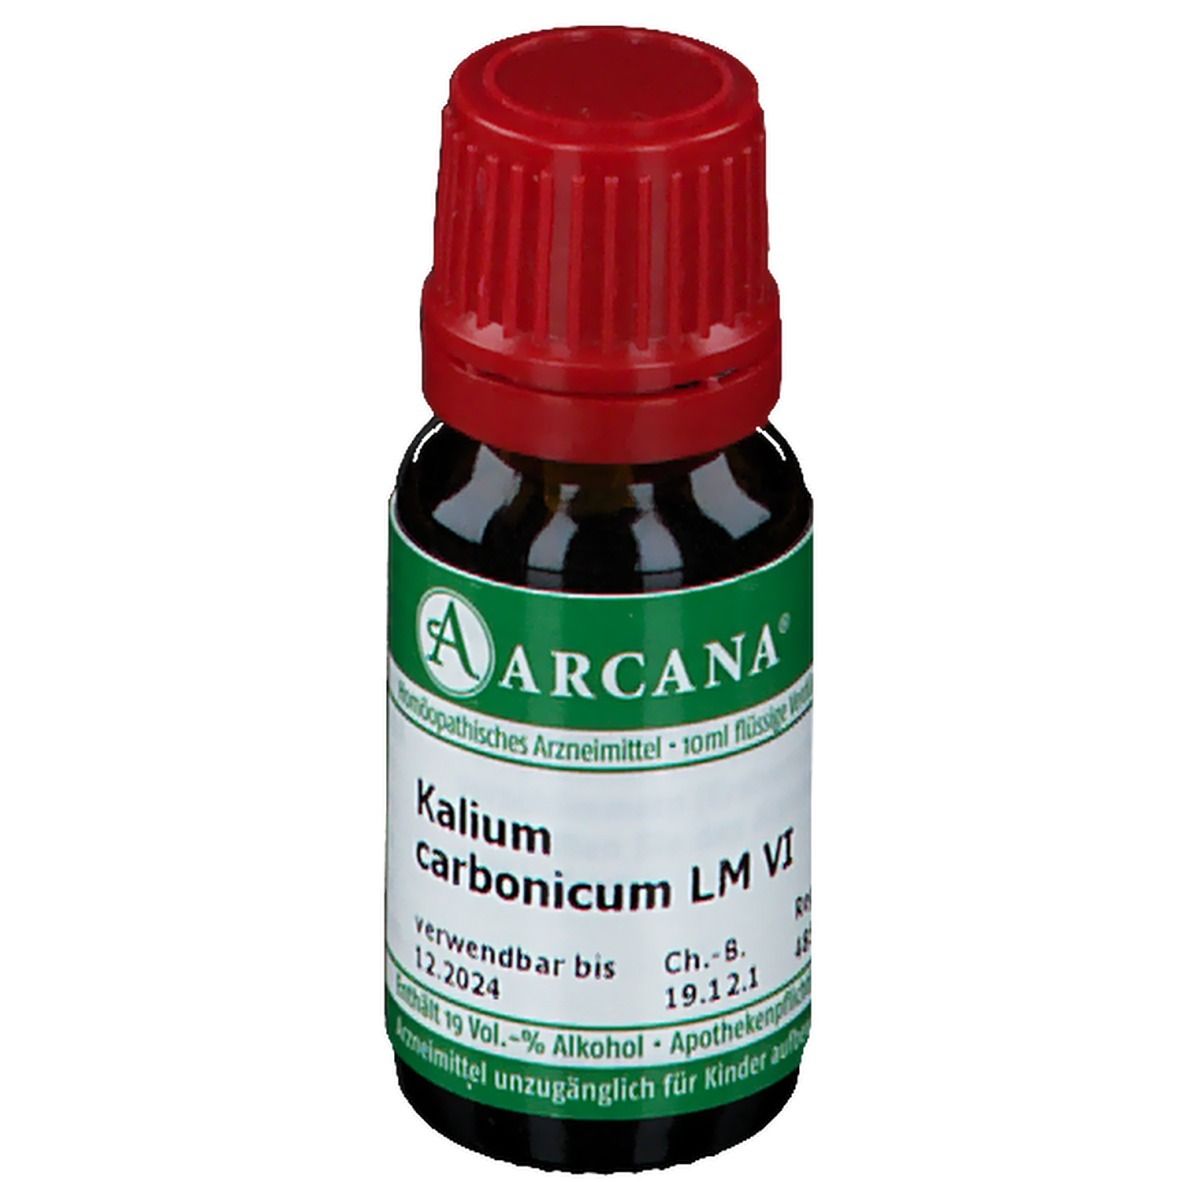 ARCANA® Kalium Carbonicum LM VI